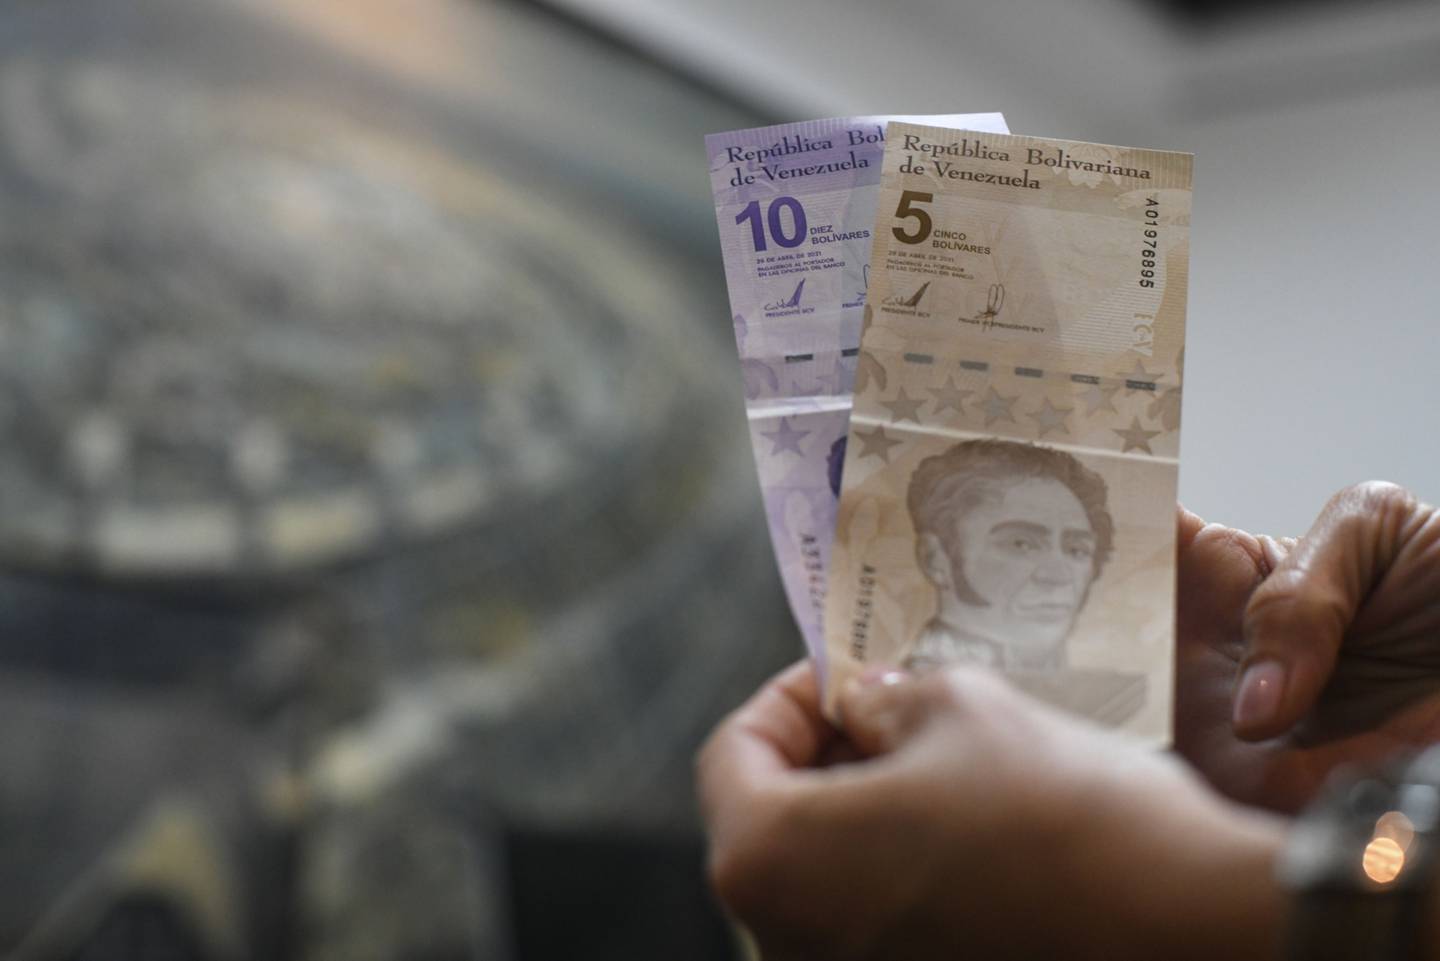 La tasa oficial, este jueves, según lo publicado en la tarde del miércoles por el Banco Central de Venezuela, se ubica en 4,17 bolívares digitales por dólar estadounidense.